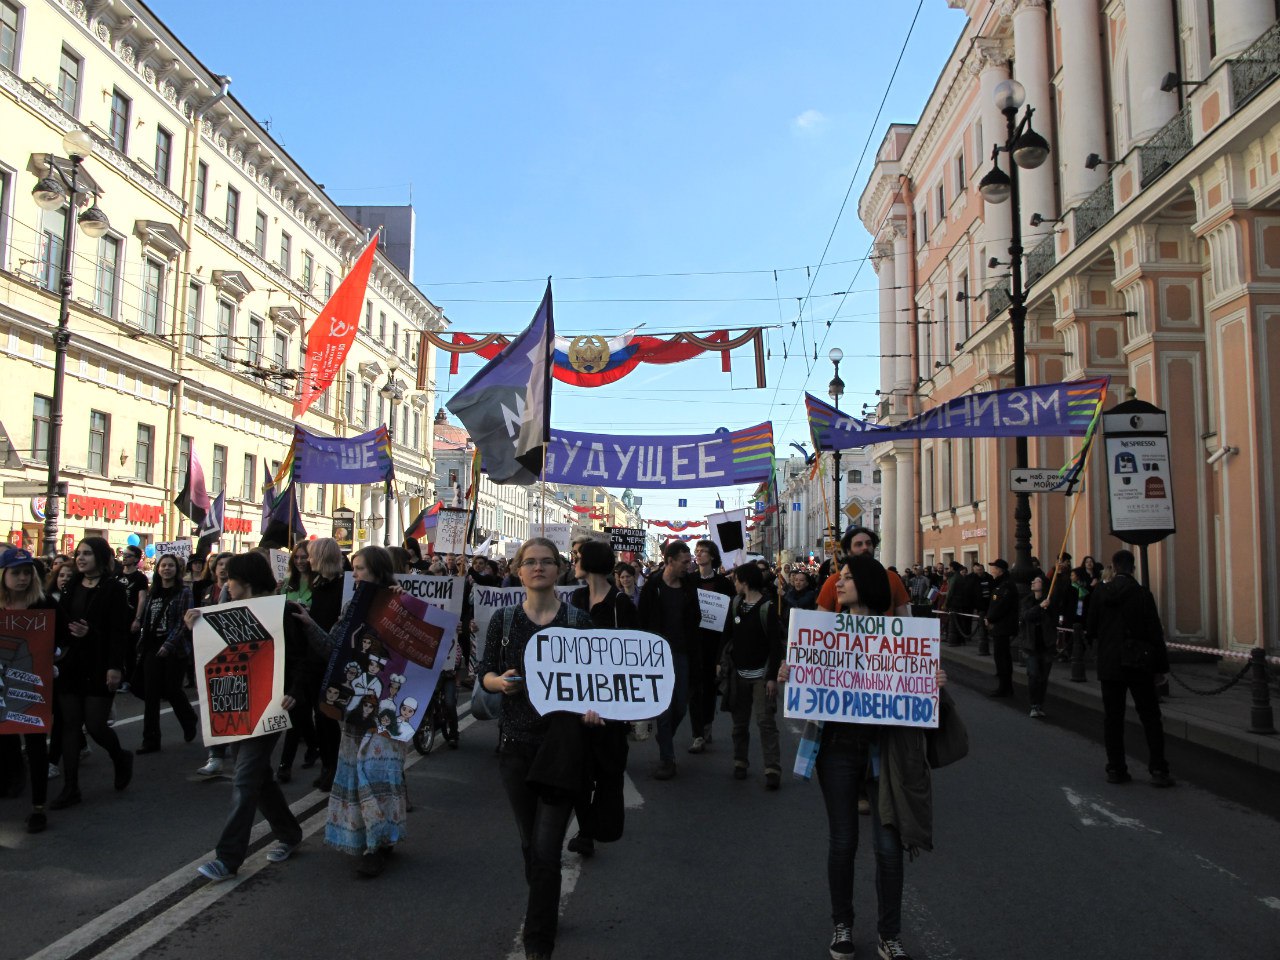 Фото двух девушек, несущих плакаты "Гомофобия убивает" и "Закон о "пропаганде" приводит к убийствам гомосексуальных людей. И это равенство?". 1 мая 2016 года. Санкт-Петербург.